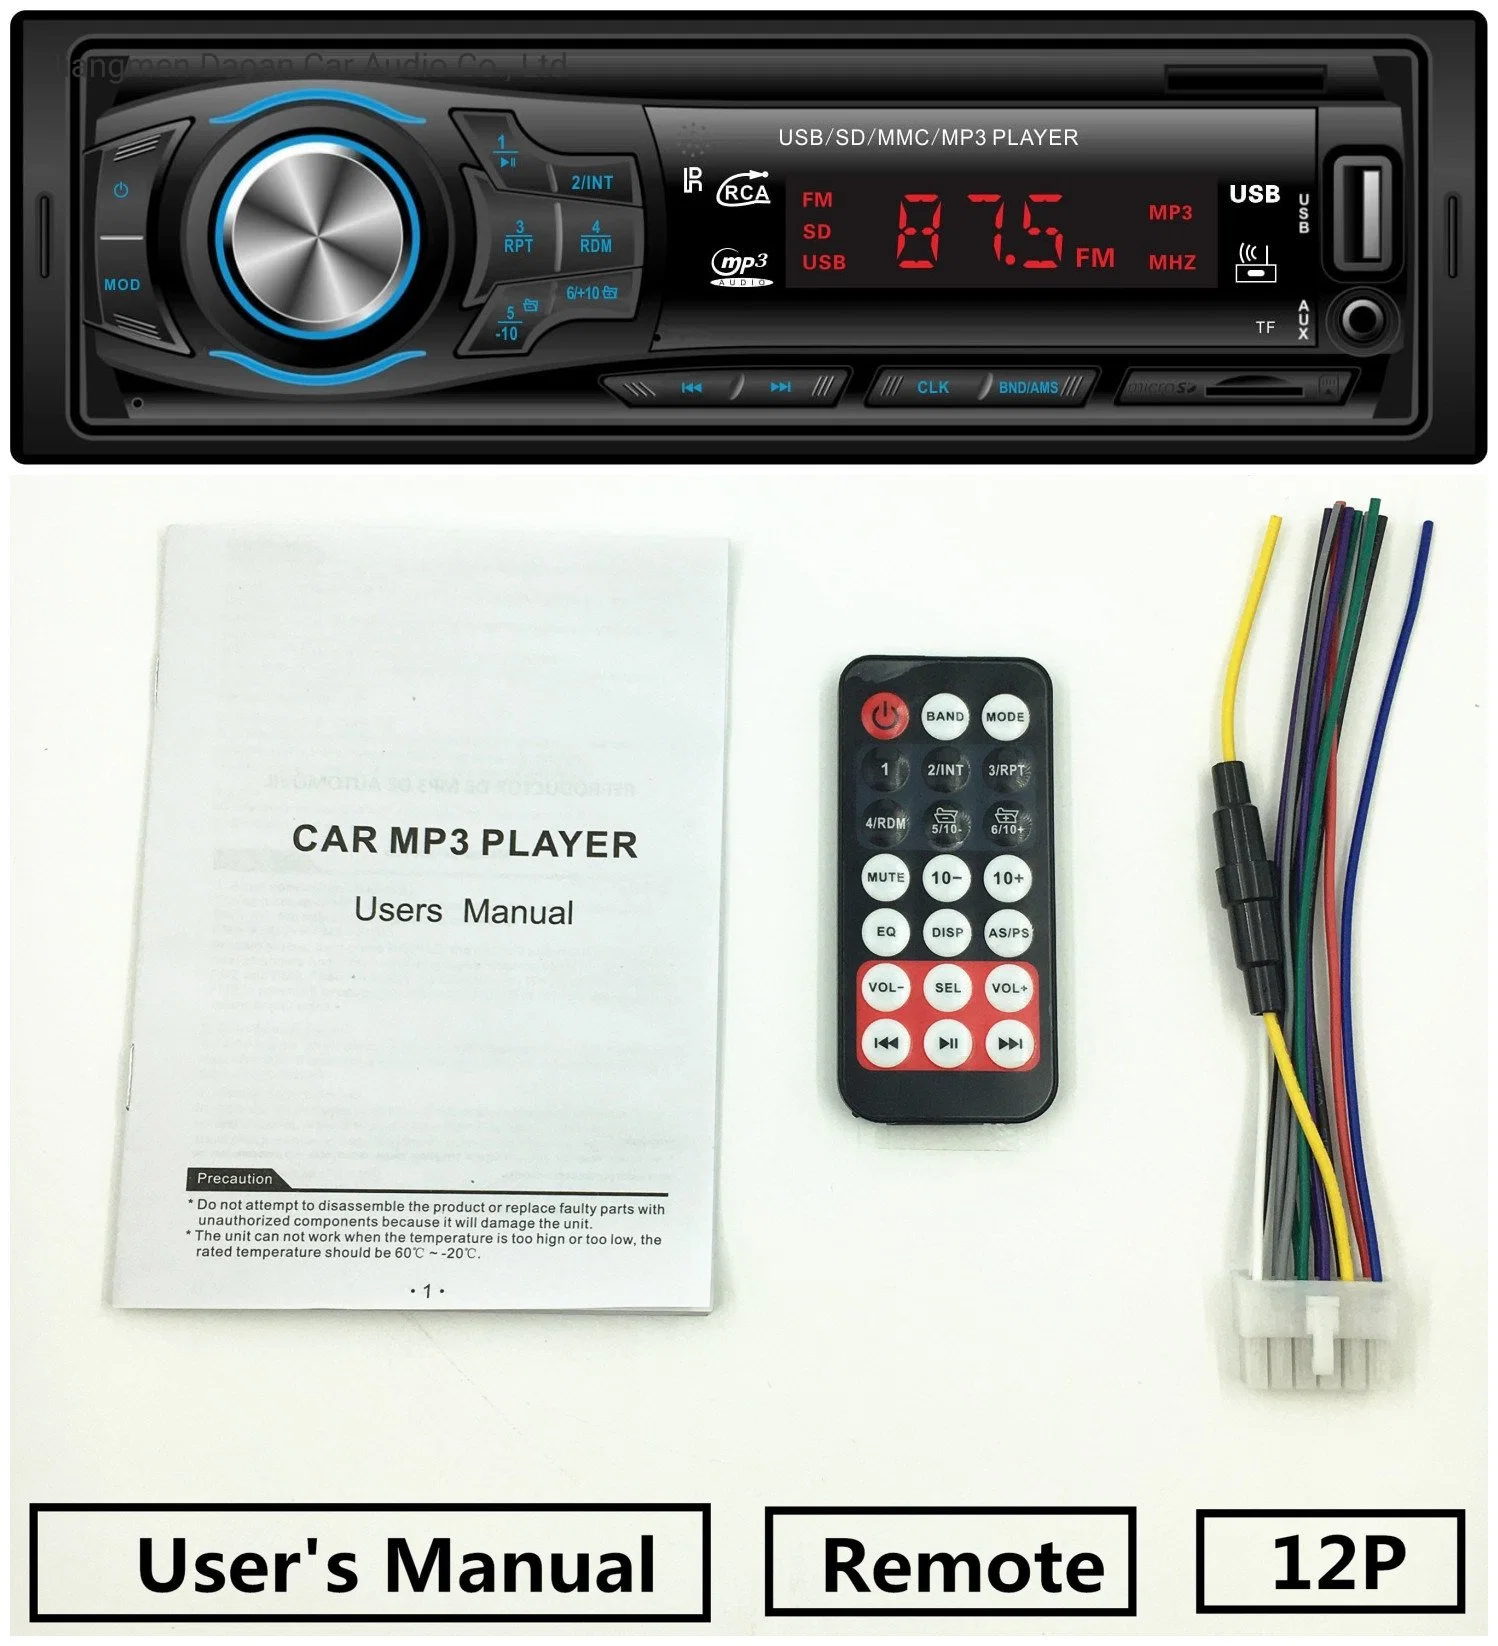 Consumer Electronics estéreo para automóvel Áudio Bluetooth duas portas USB player de MP3